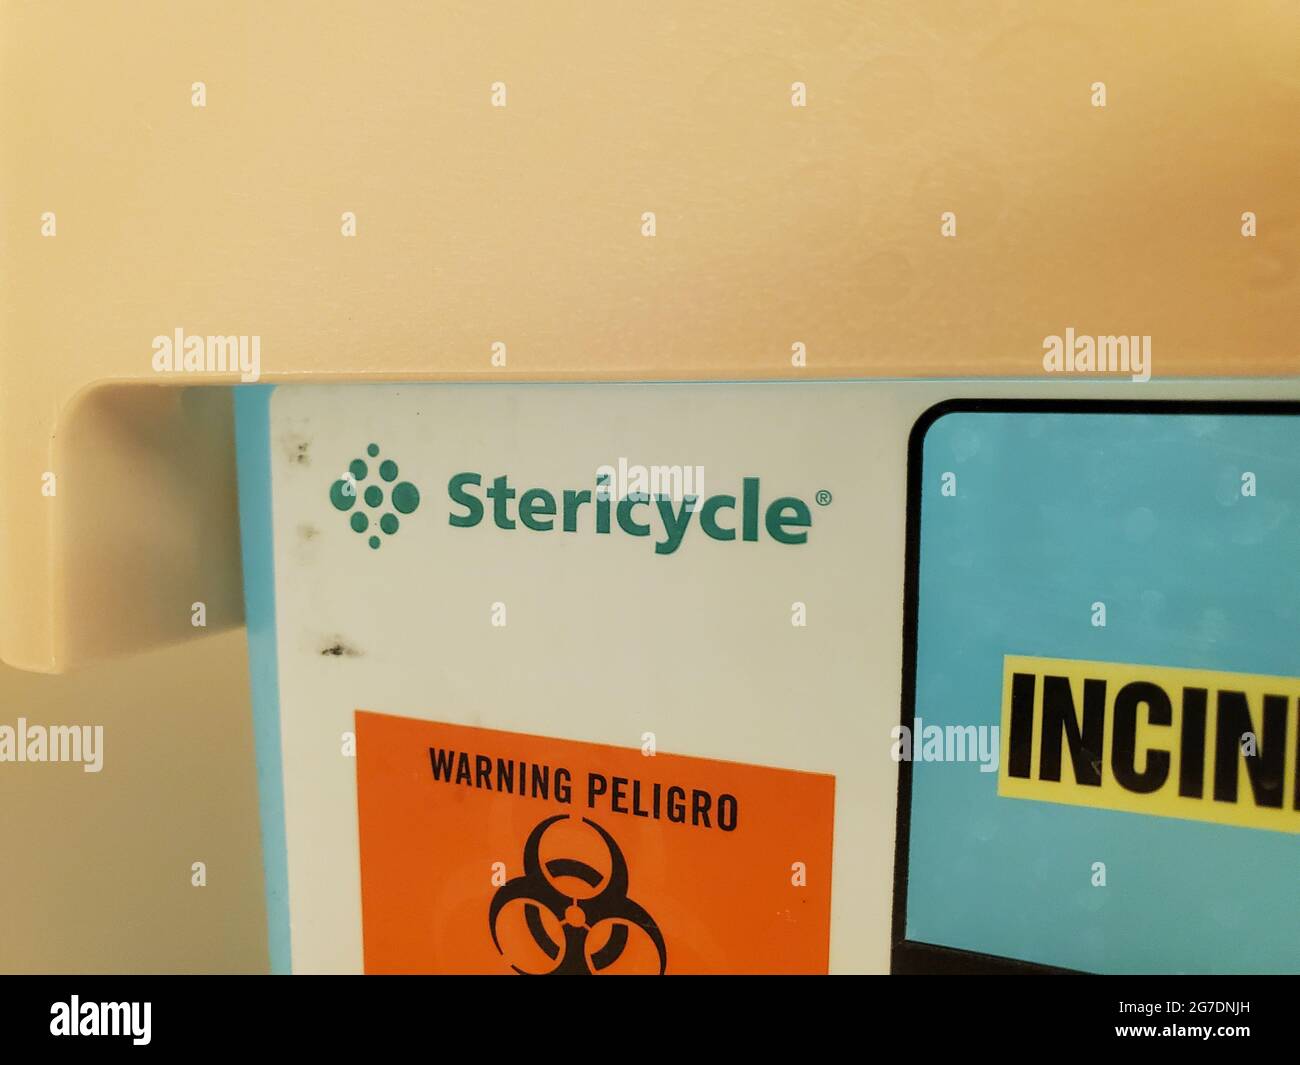 Nahaufnahme des Logos für Stericycle, ein Unternehmen, das sich auf die Sammlung und Entsorgung von medizinischem Abfall spezialisiert hat, in einem medizinischen Umfeld in San Francisco, Kalifornien, 18. April 2021. () Stockfoto